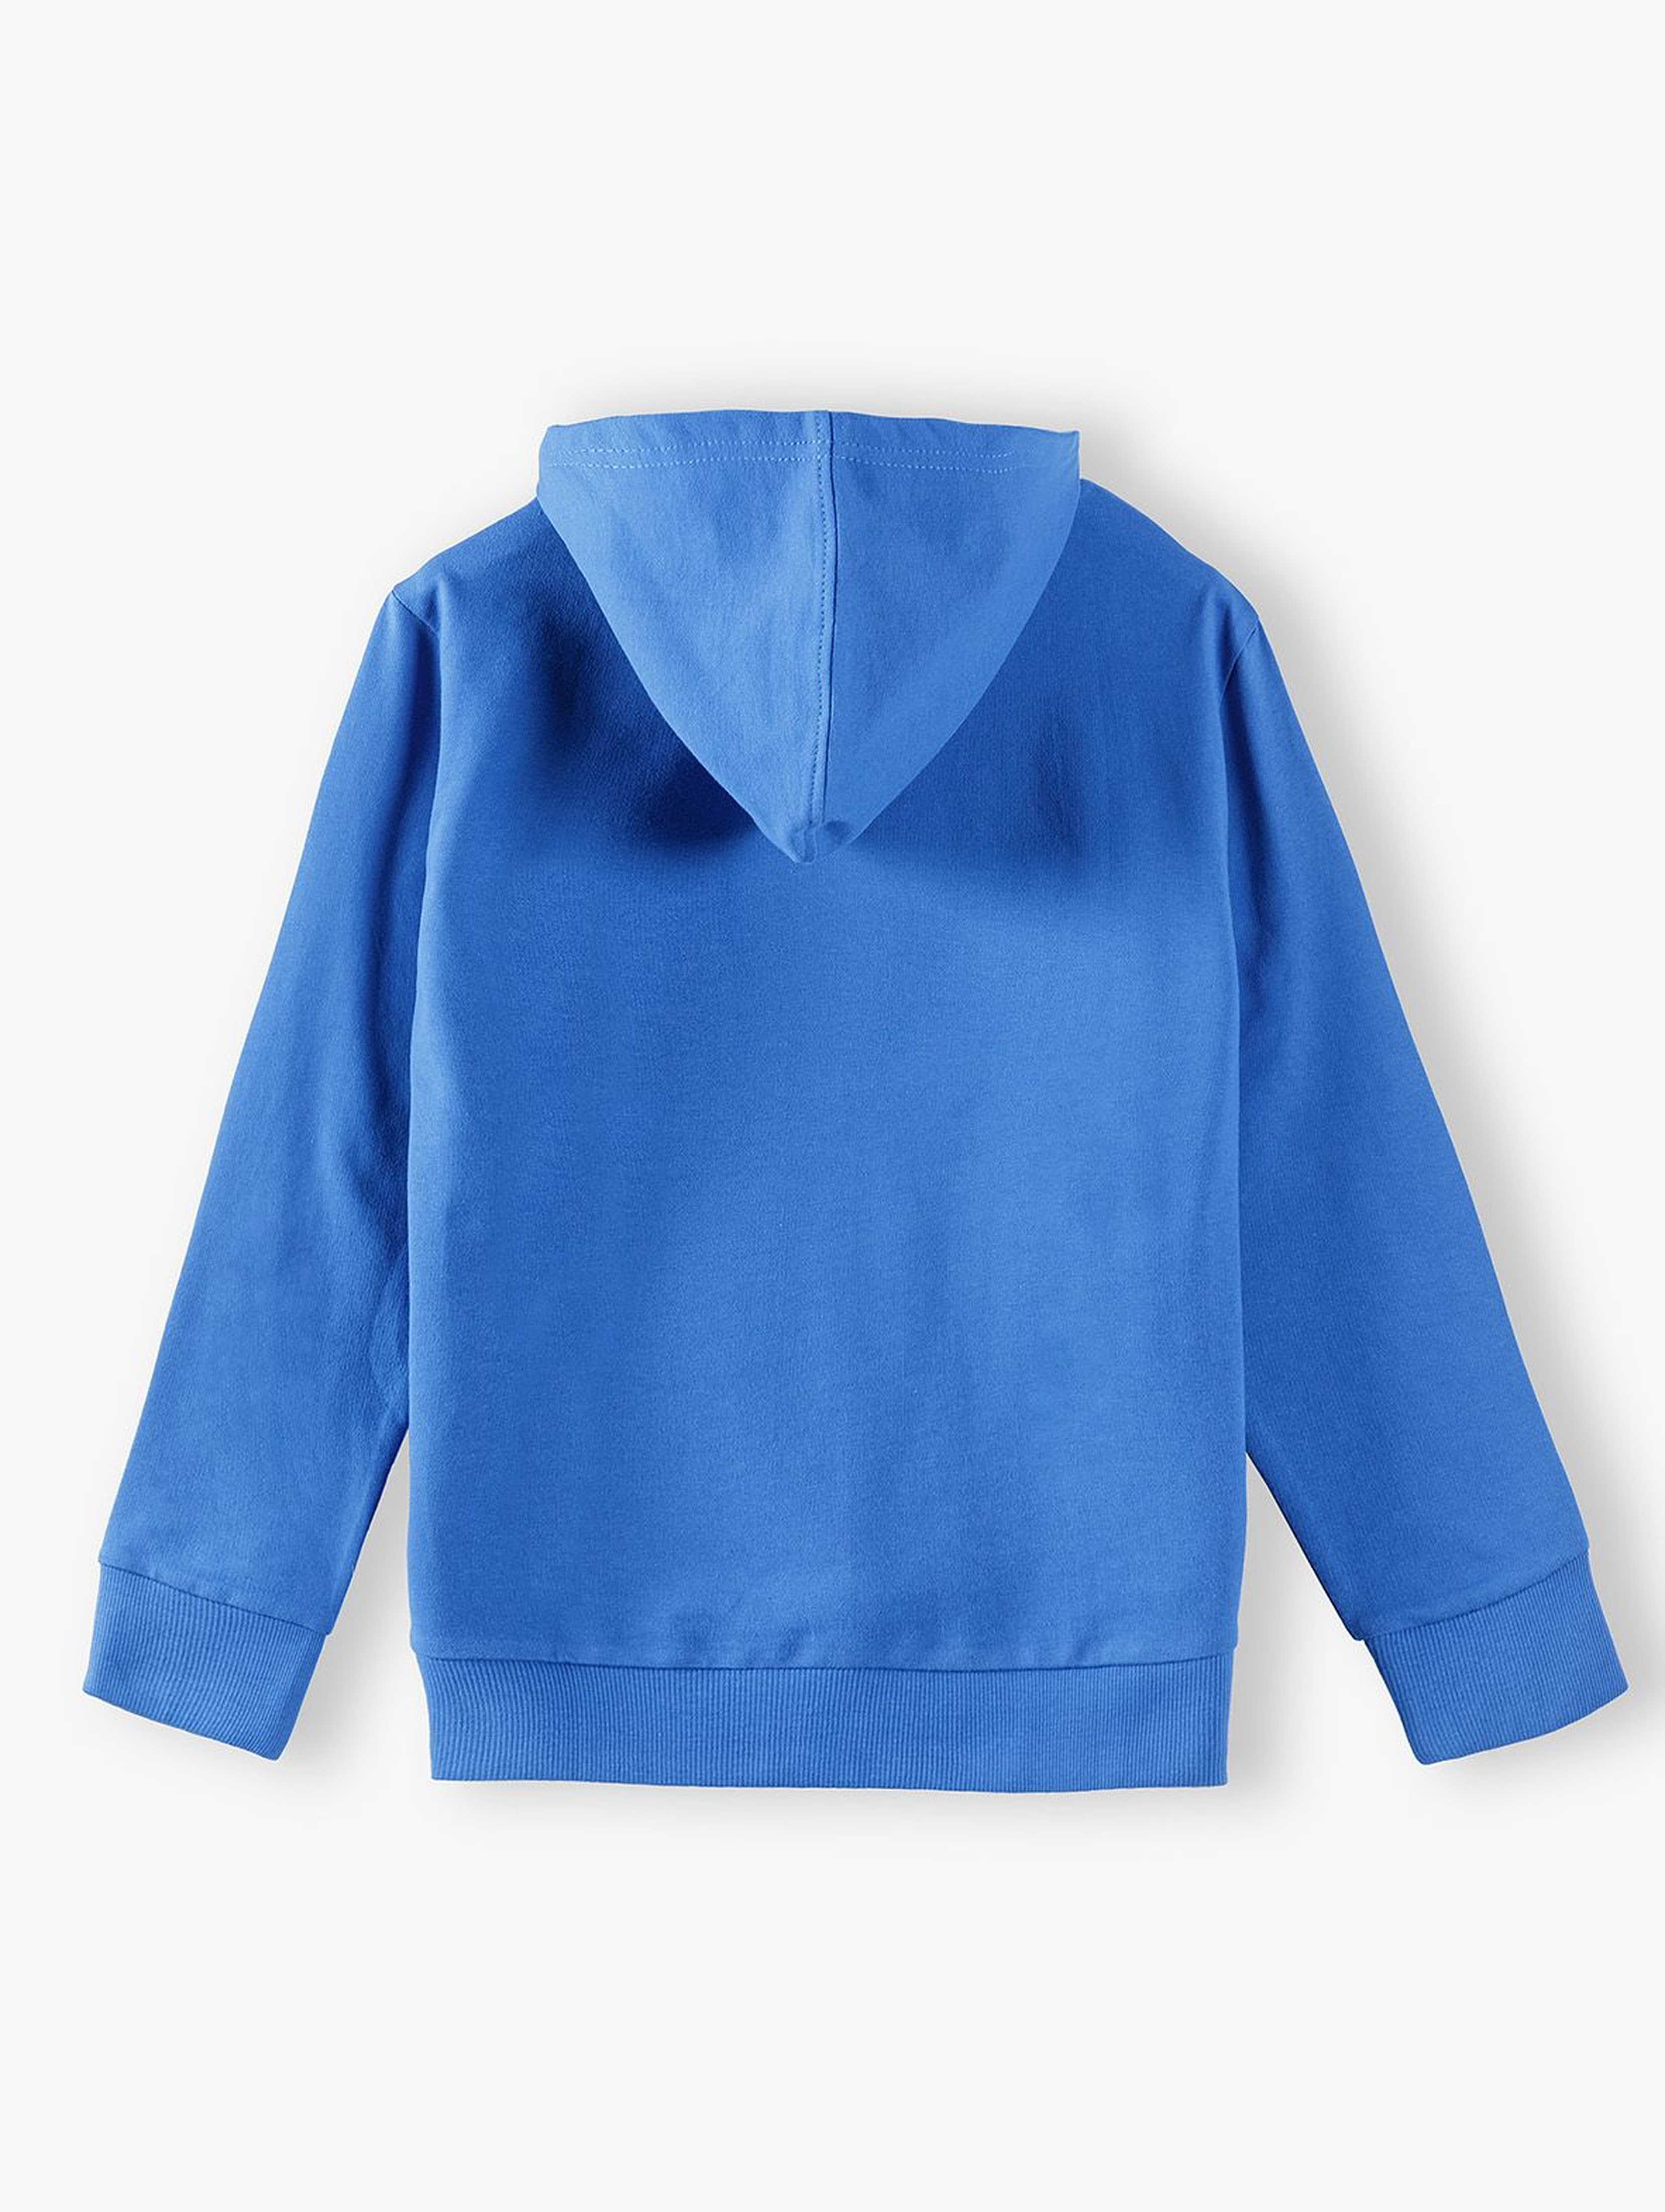 Bluza dresowa chłopięca z kapturem i kieszenią z przodu- niebieska